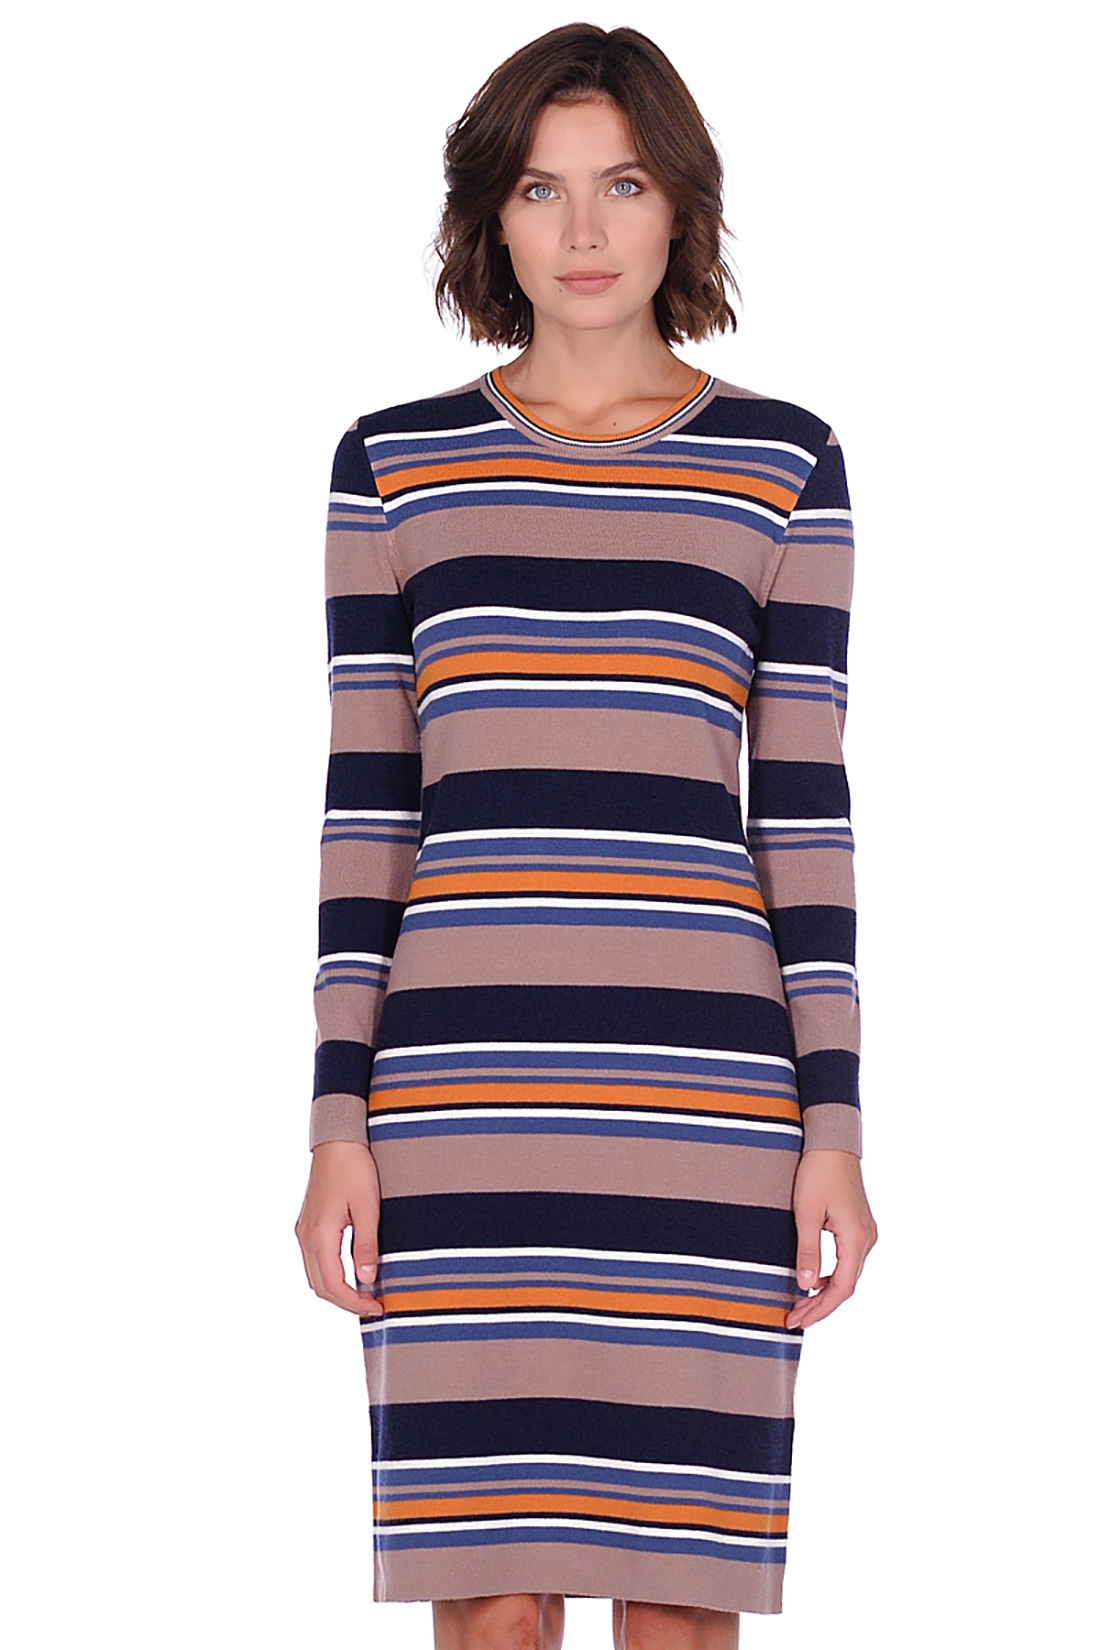 Платье из трикотажа в полоску (арт. baon B459536), размер L, цвет multicolor striped#многоцветный Платье из трикотажа в полоску (арт. baon B459536) - фото 2